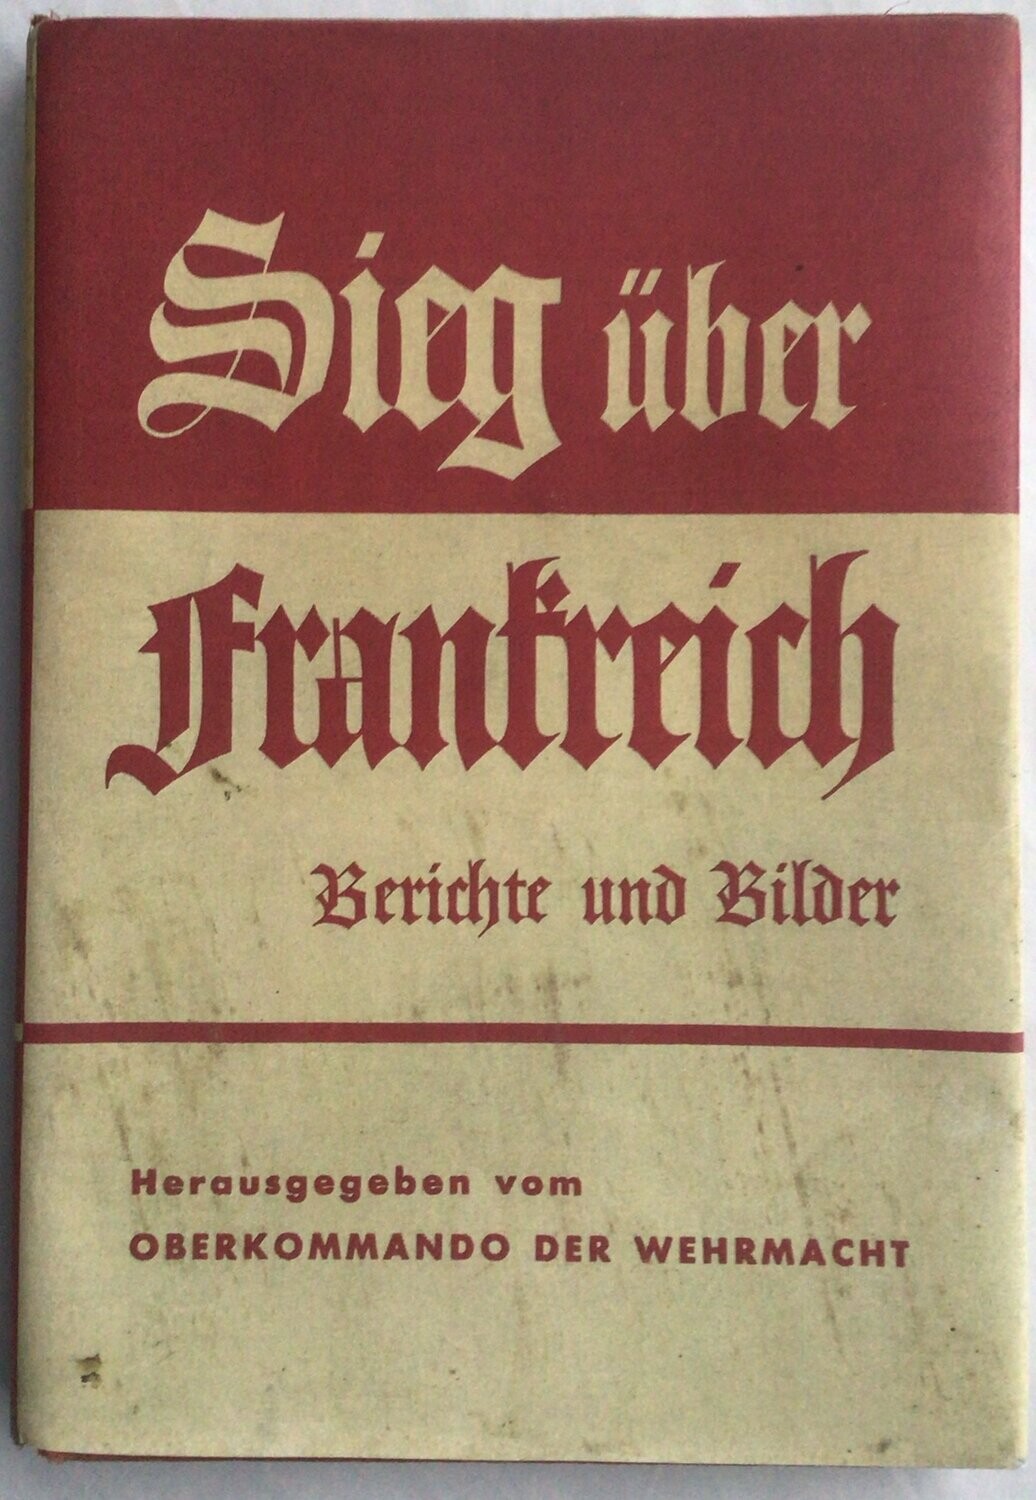 Oberkommando der Wehrmacht: Sieg über Frankreich - Ganzleinenausgabe aus dem Jahr 1940 mit Schutzumschlag (Farbkopie)